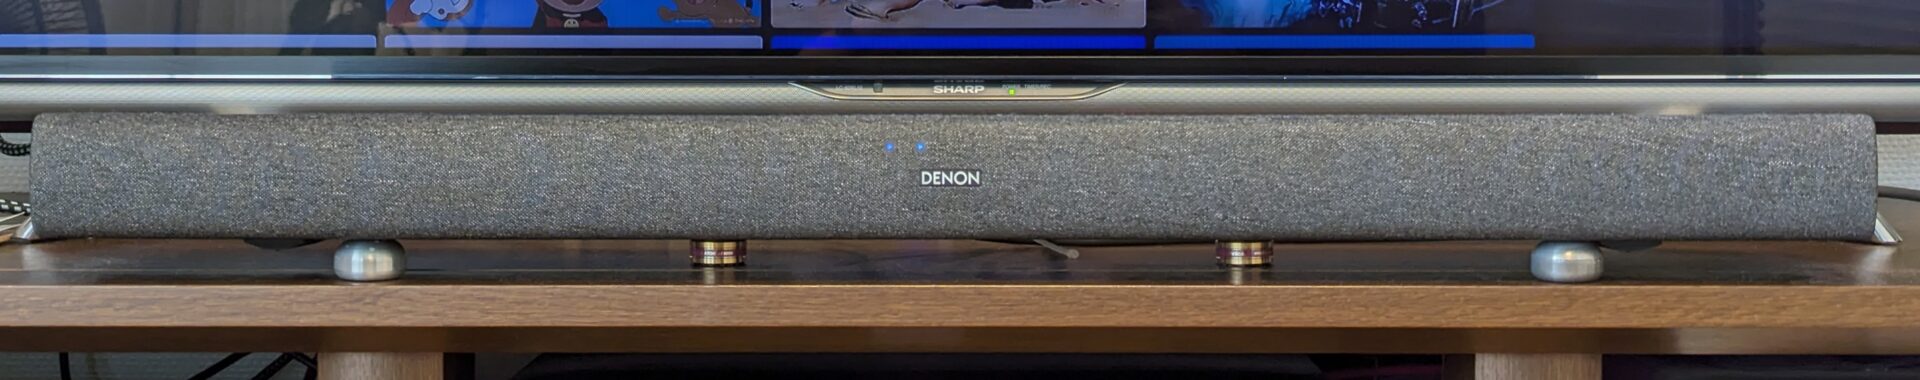 DENONサウンドバーS217Kその他Bluetooth対応